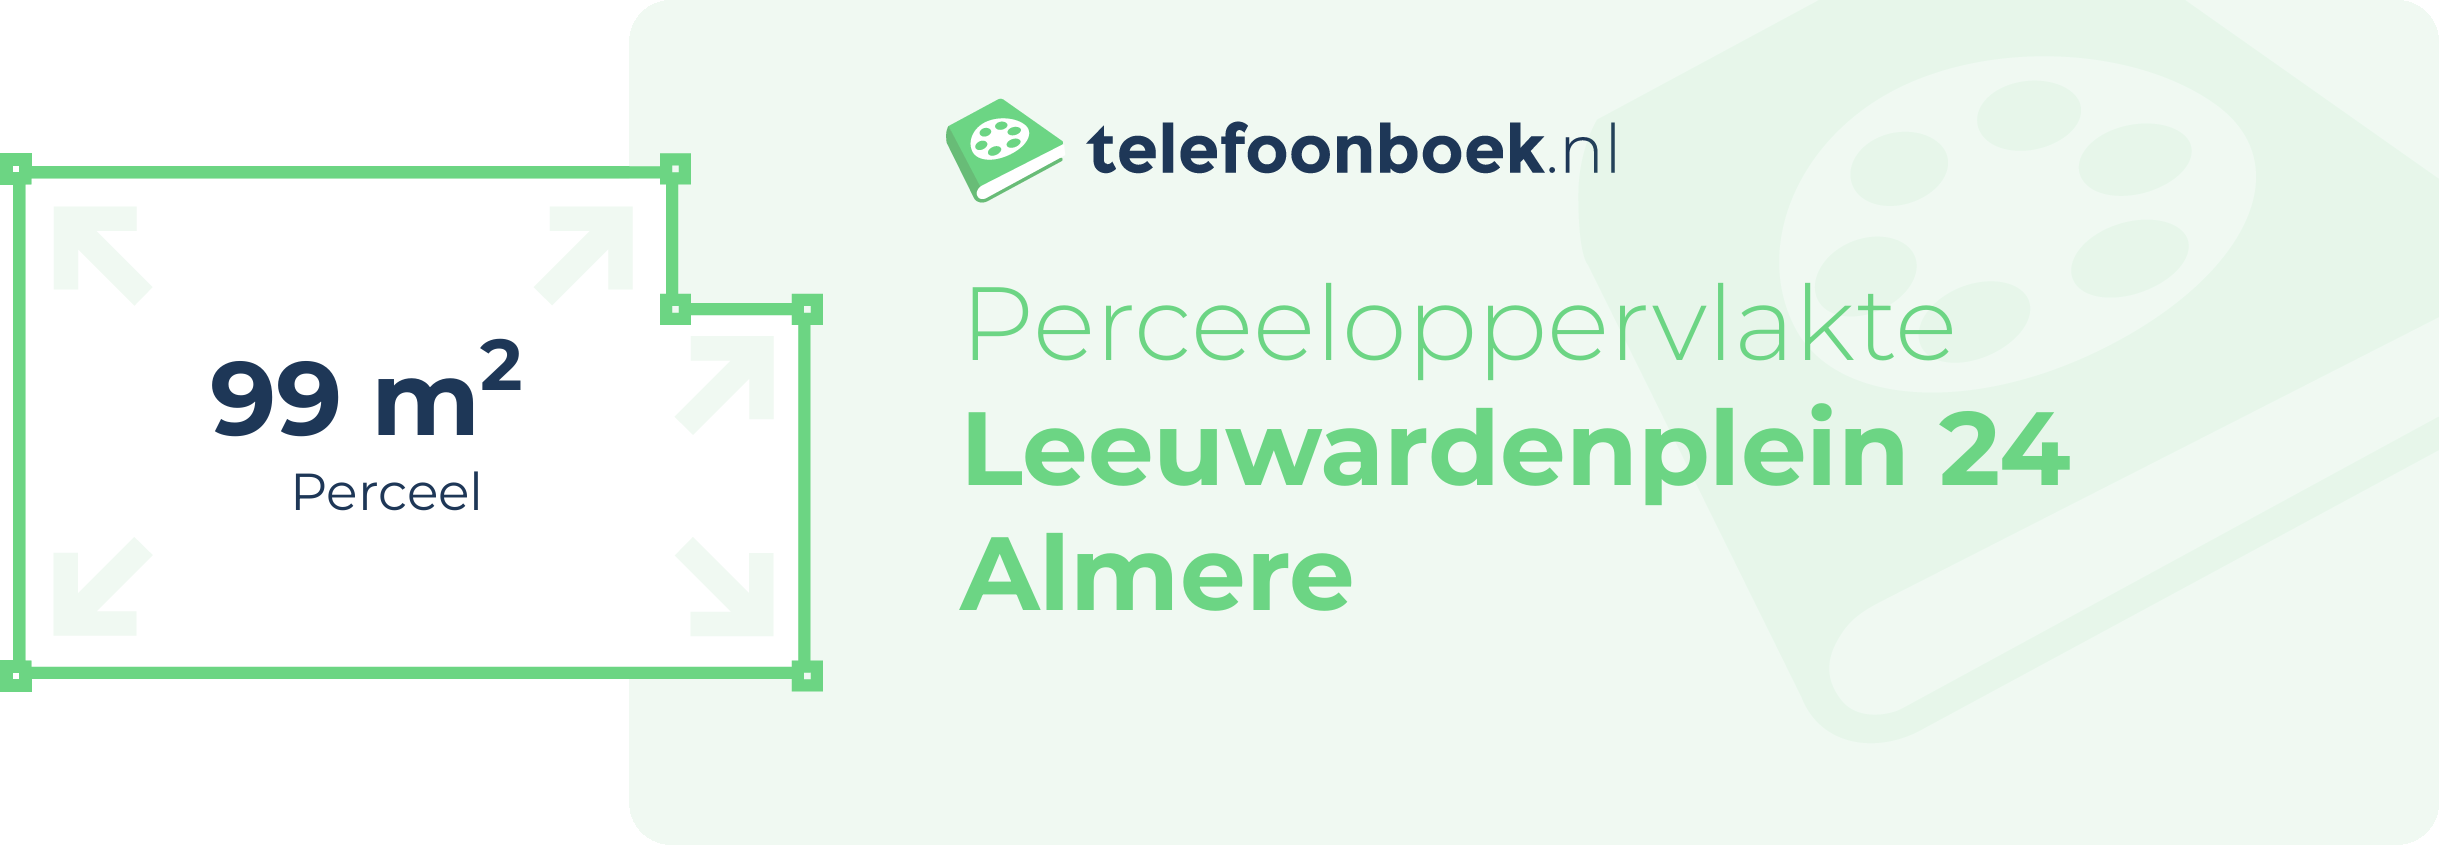 Perceeloppervlakte Leeuwardenplein 24 Almere